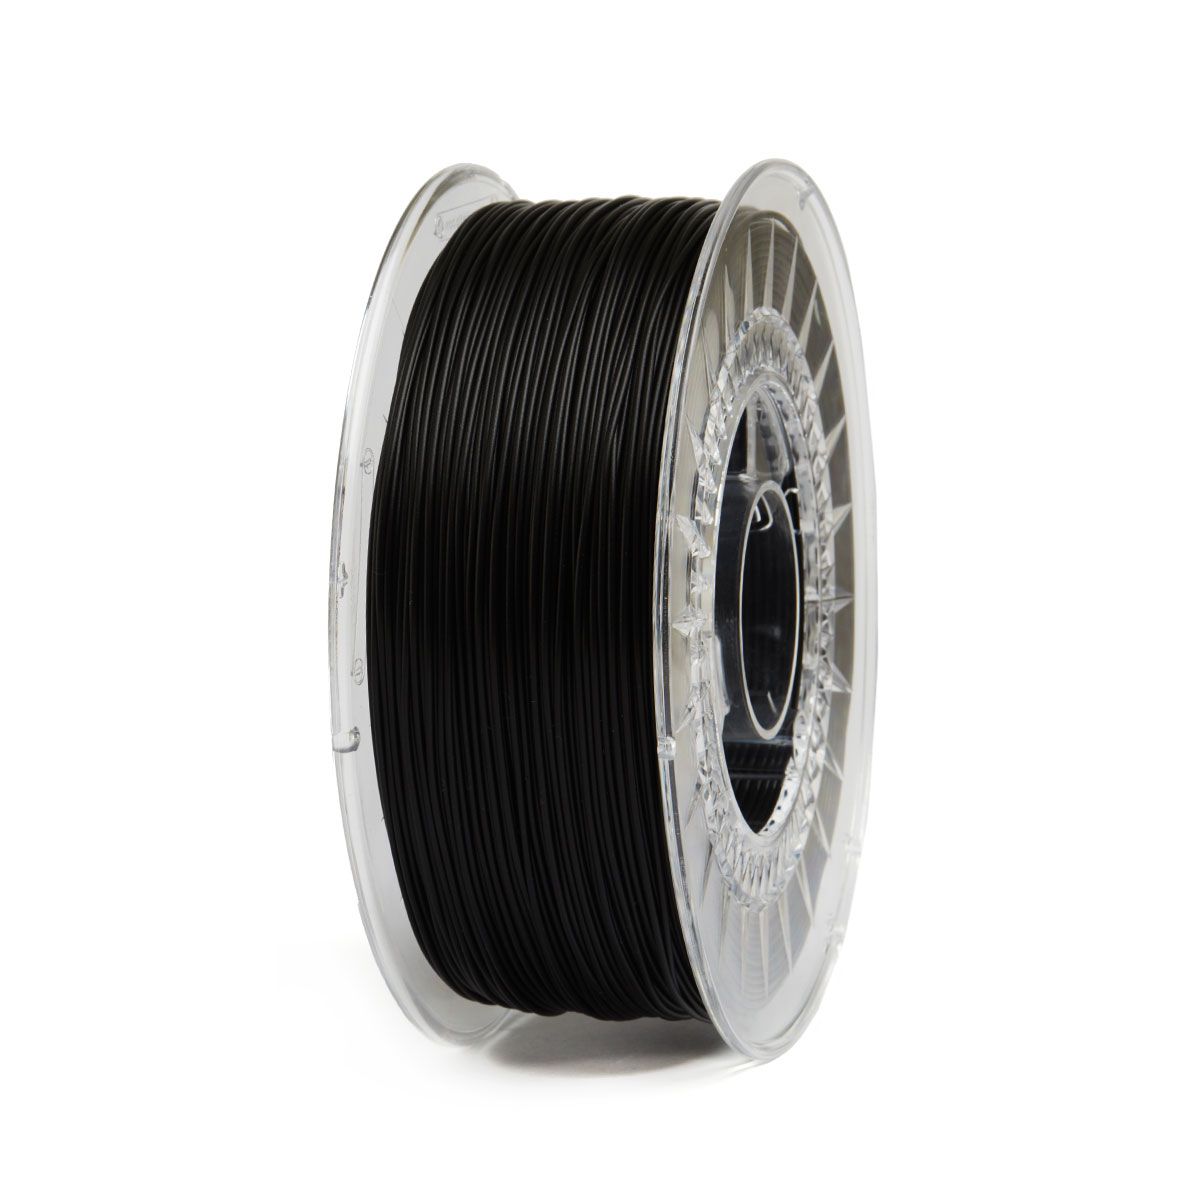 FAST PRINTS PLA Filament | Color: Black